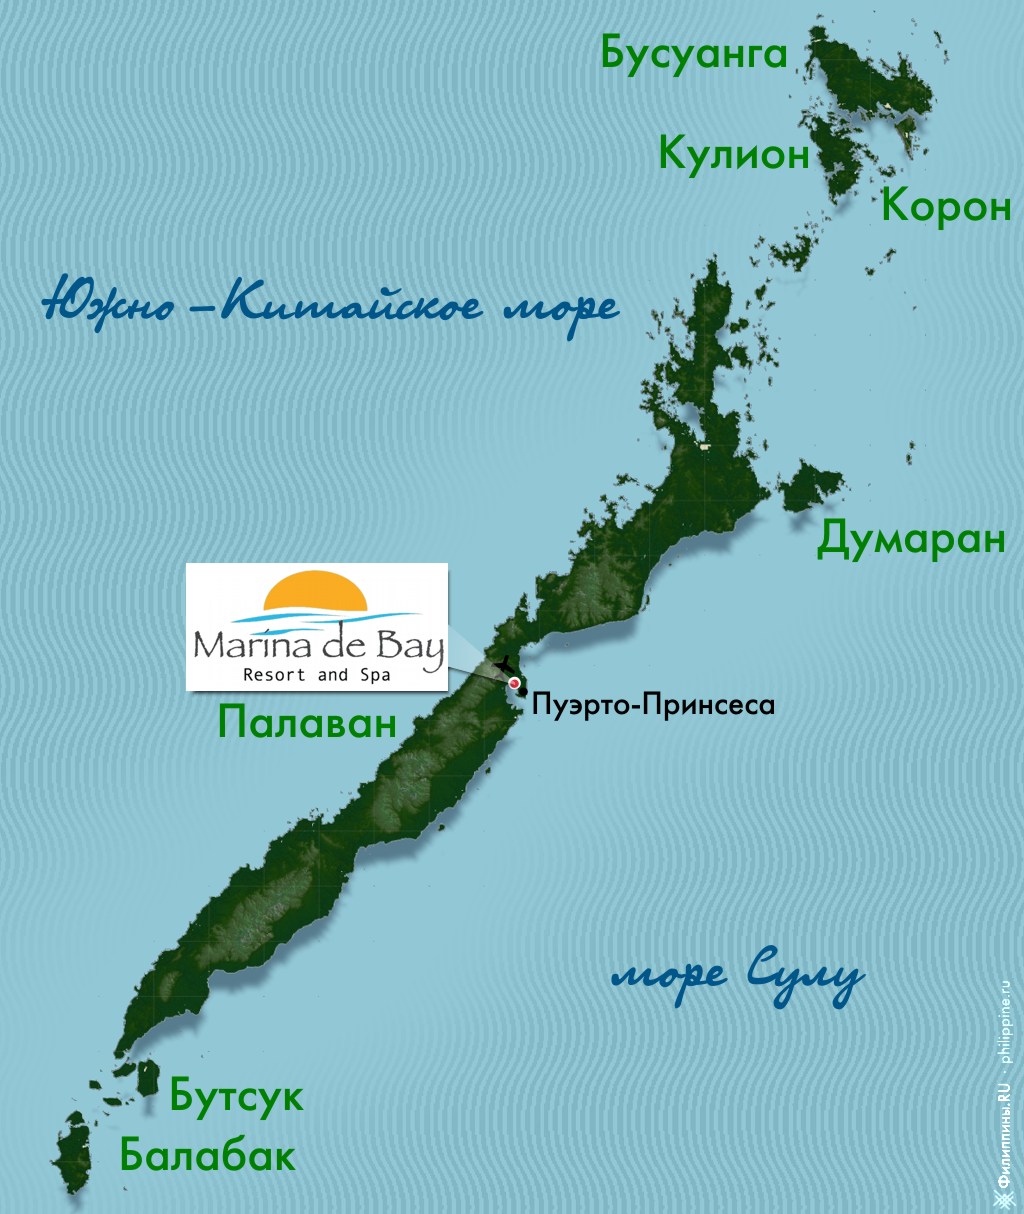 Положение отеля Marina de Bay на карте Палавана